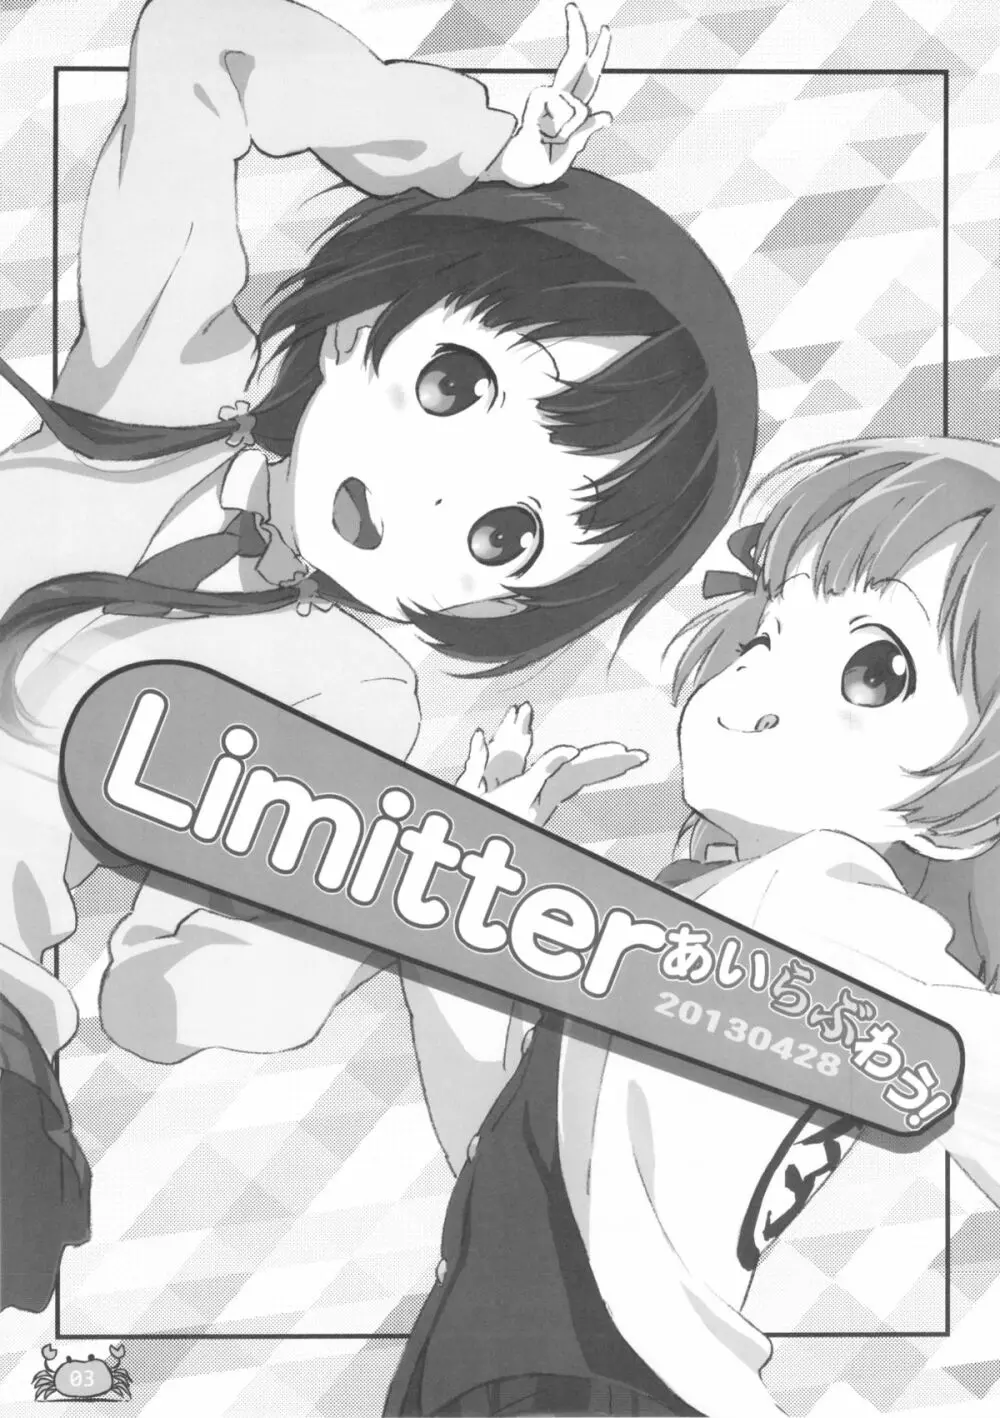 Limitter あいらぶわう！ 20130428 3ページ